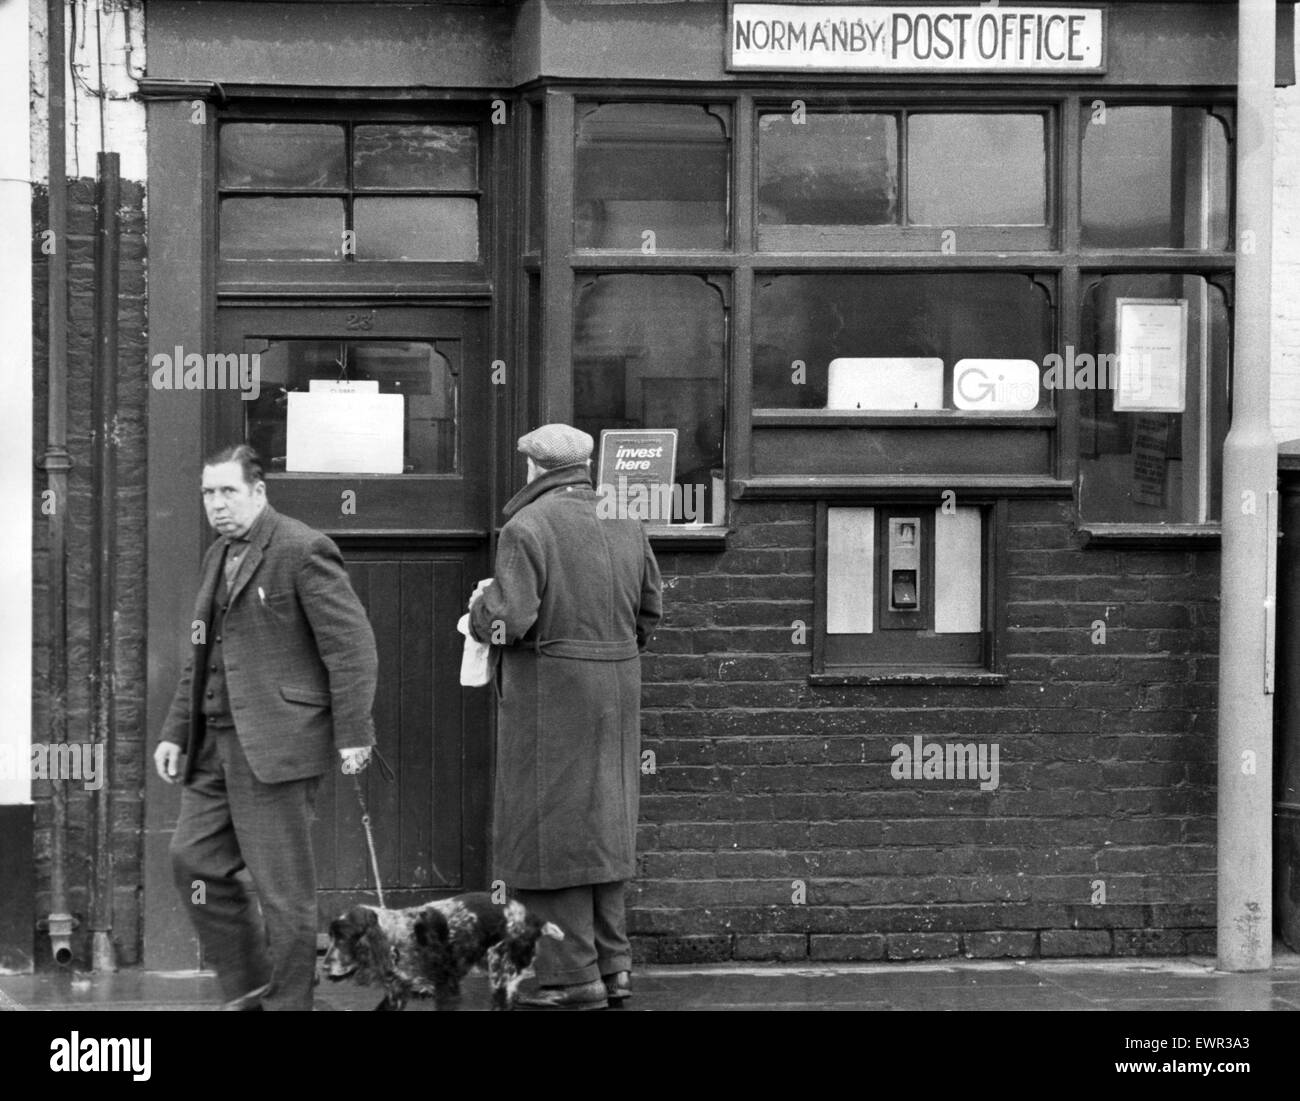 Normanby Post, die letzte Nacht eingebrochen war. Räuber kam mit Bargeld, Briefmarken und Post Aufträge im Wert von ca. 8.000 £. 21. November 1972. Stockfoto